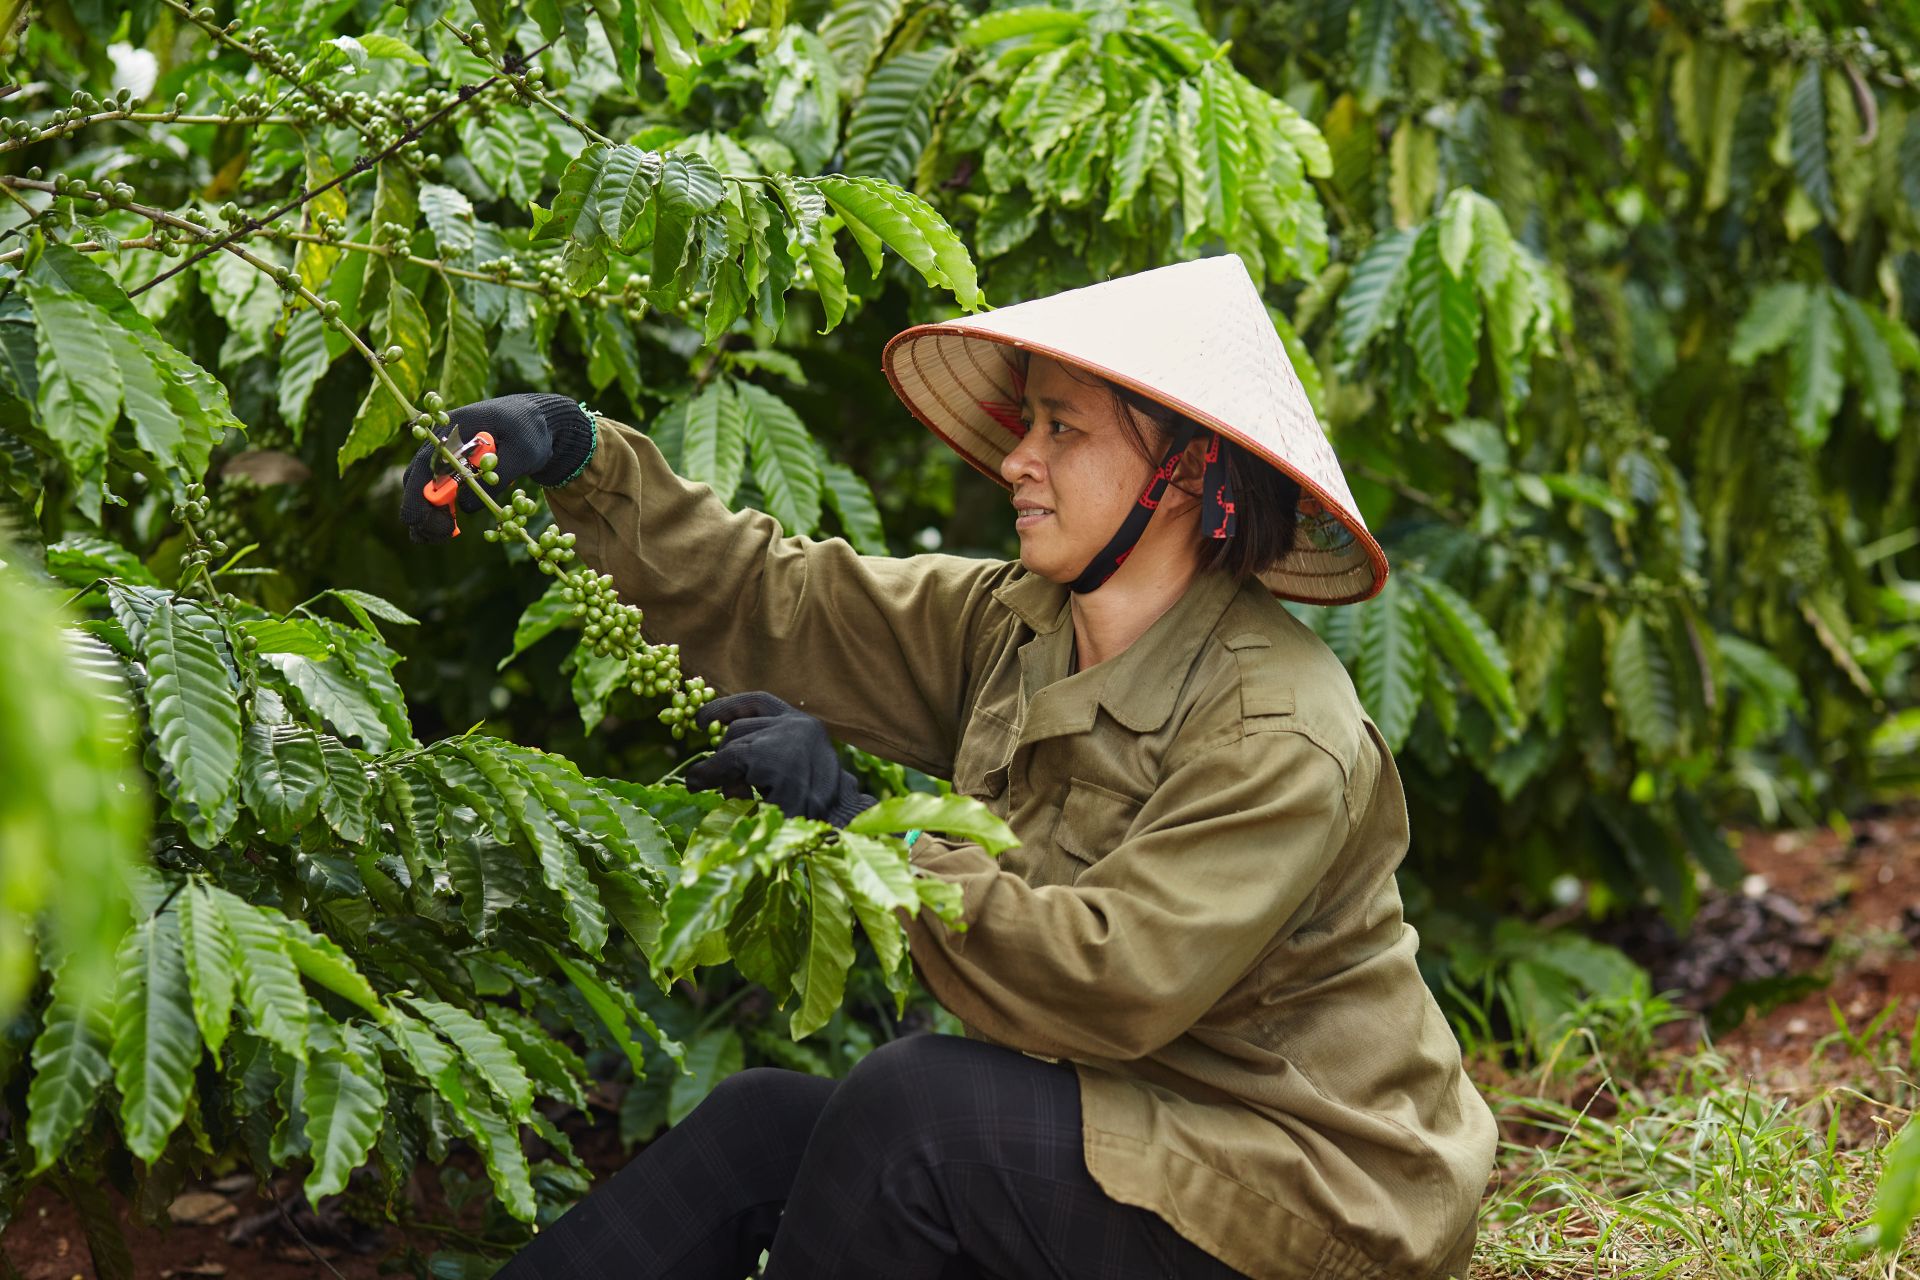 Kỹ thuật được chia sẻ trong chương trình Nescafé Plan giúp giảm 20% lượng phân bón mà vẫn đảm bảo năng suất cây cà phê.